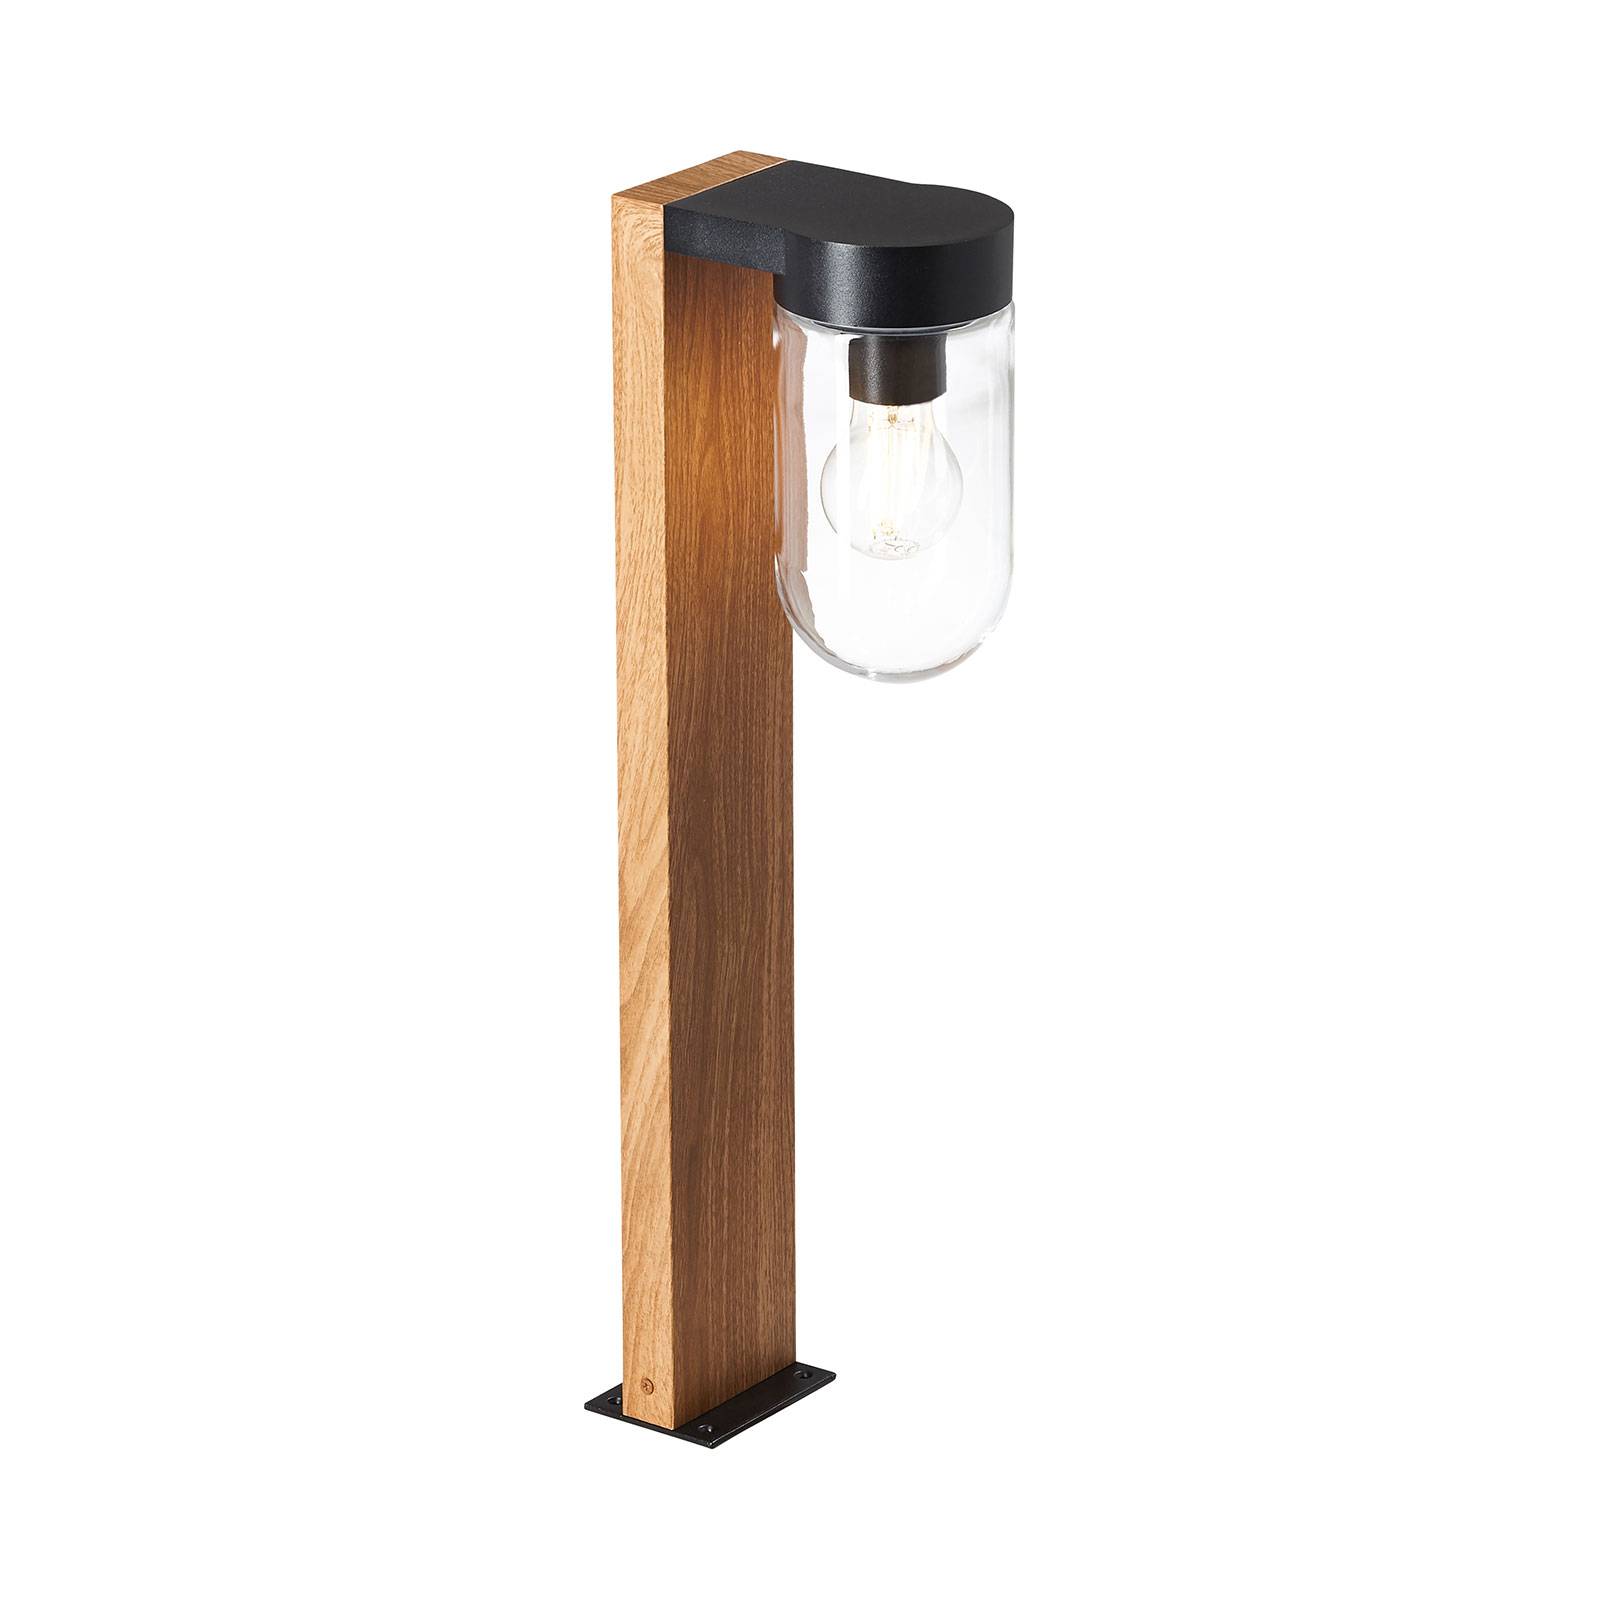 E-shop Soklové svietidlo Cabar drevený vzhľad sklenené